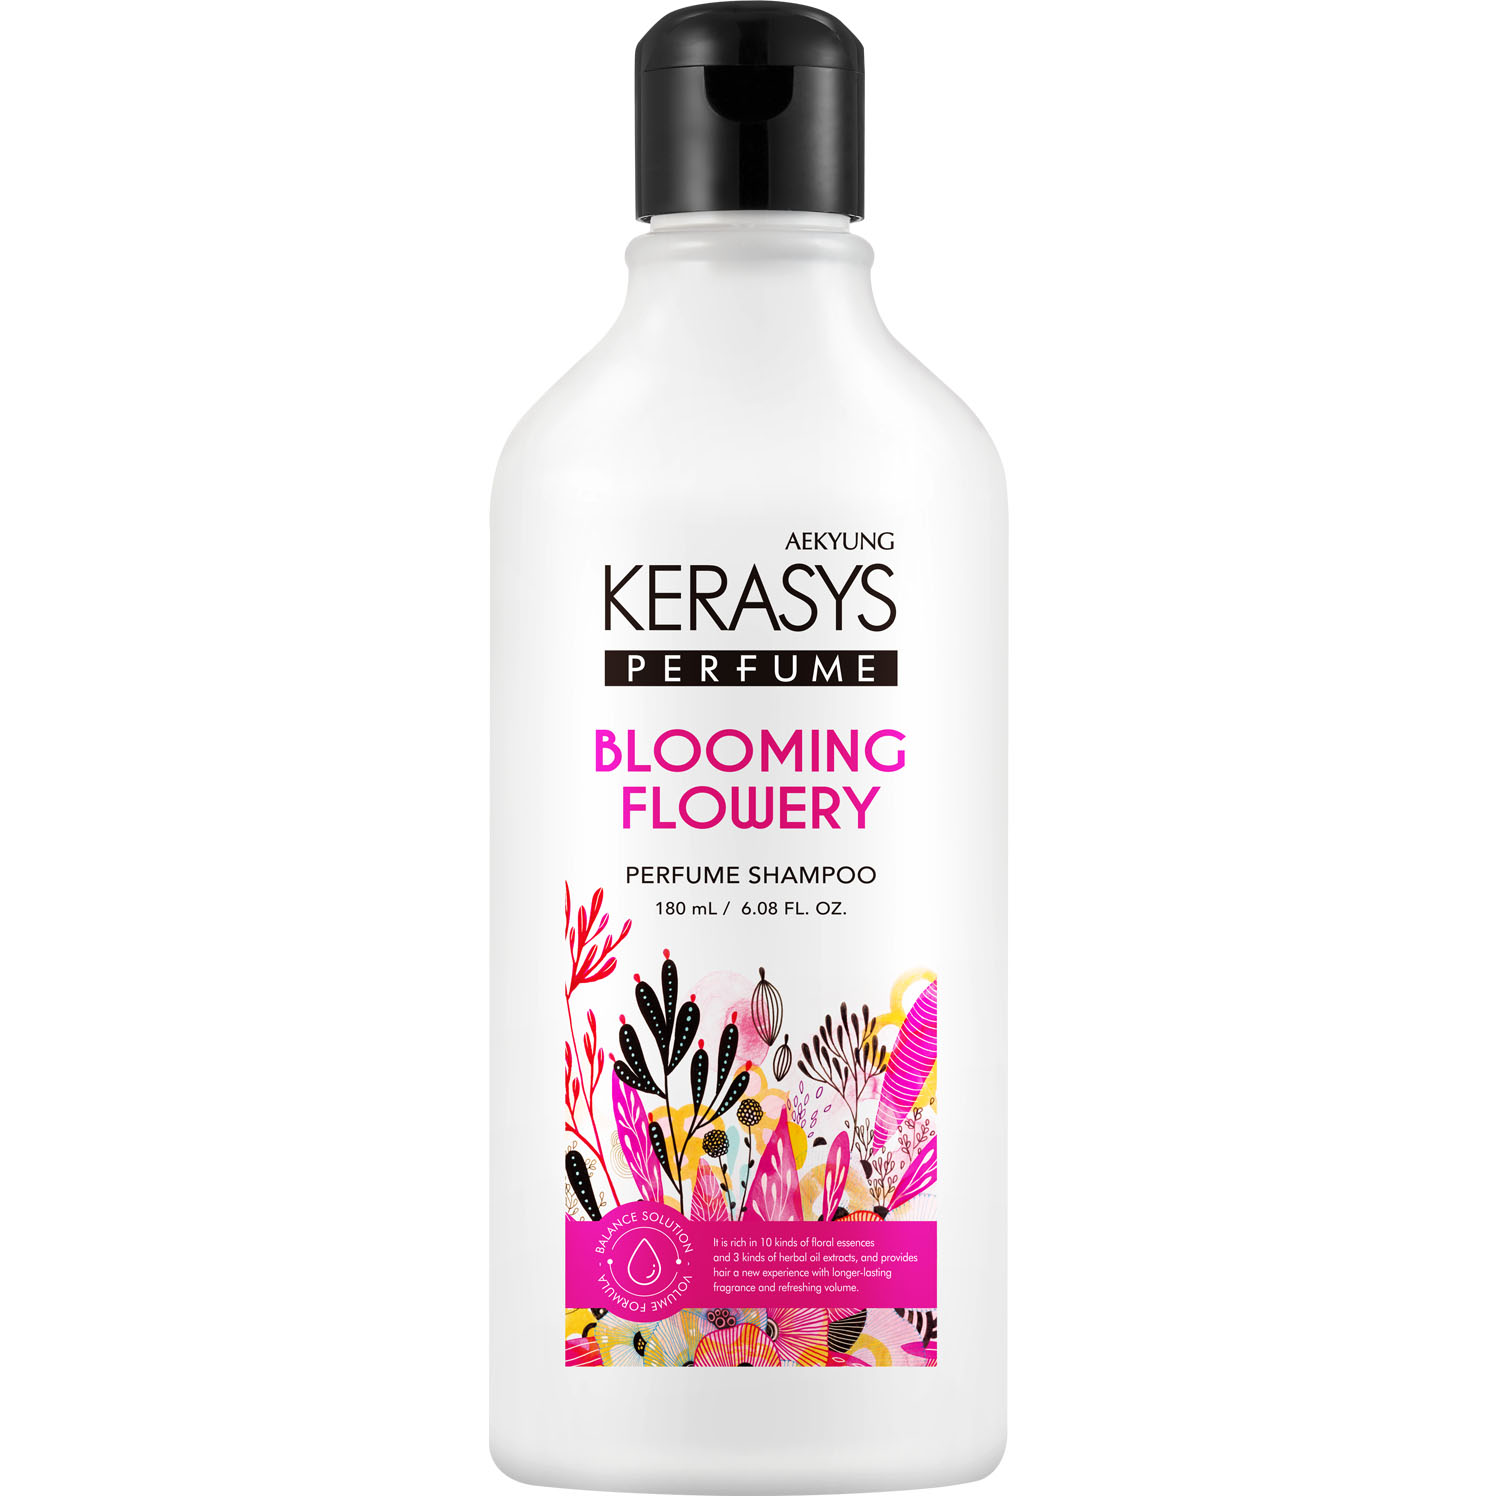 Kerasys Шампунь для всех типов волос Blooming Flowery, 180 мл (Kerasys, Perfumed Line) kerasys шампунь для всех типов волос glam stylish 400 мл kerasys perfumed line